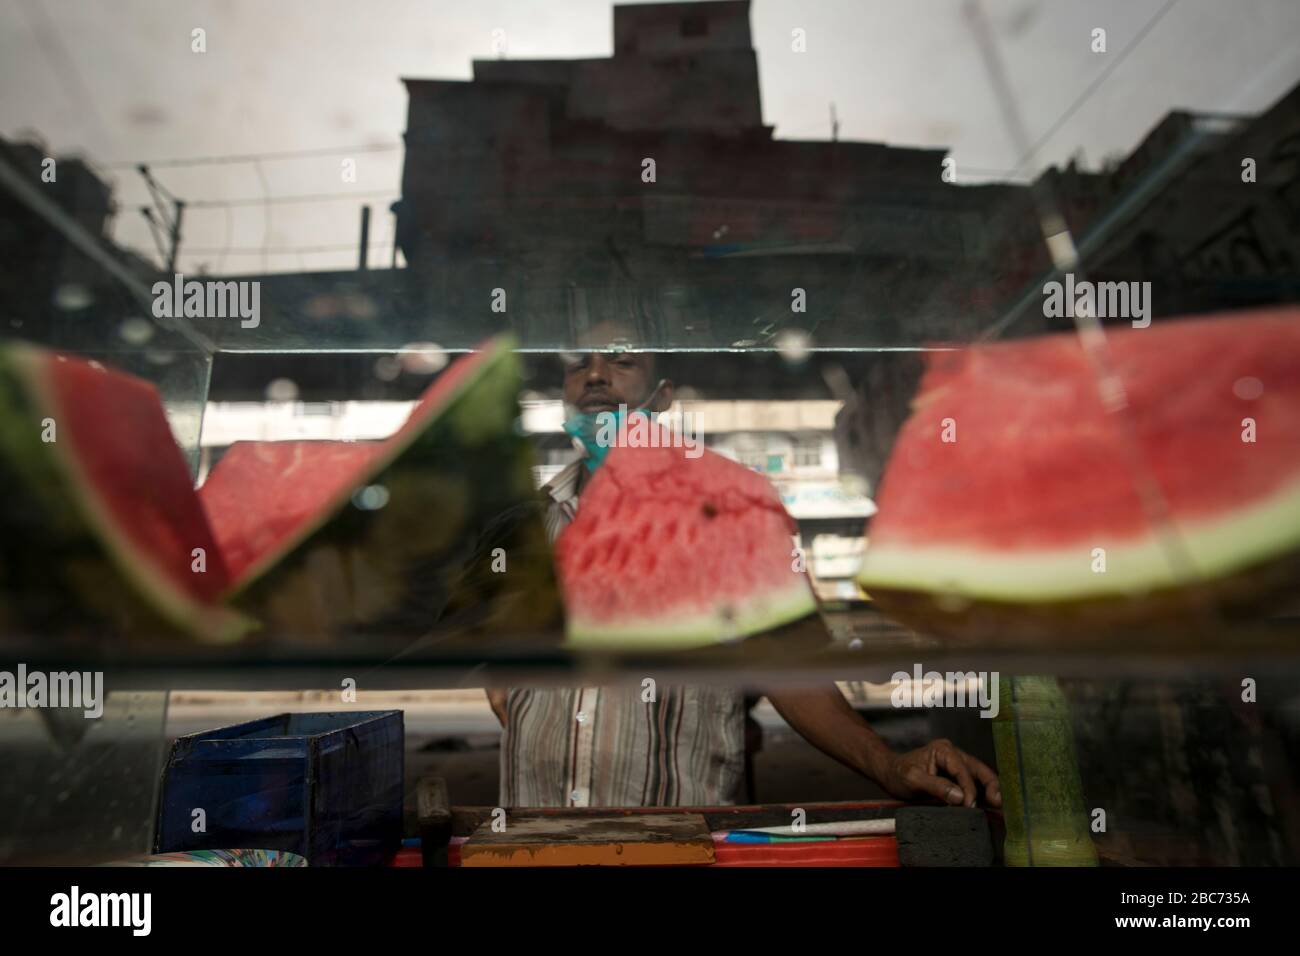 DHAKA, BANGLADESH - APRILE 03: Un falco vende cibo per strada durante la chiusura a chiave imposta dal governo come misura preventiva contro il coronaviru COVID-19 Foto Stock